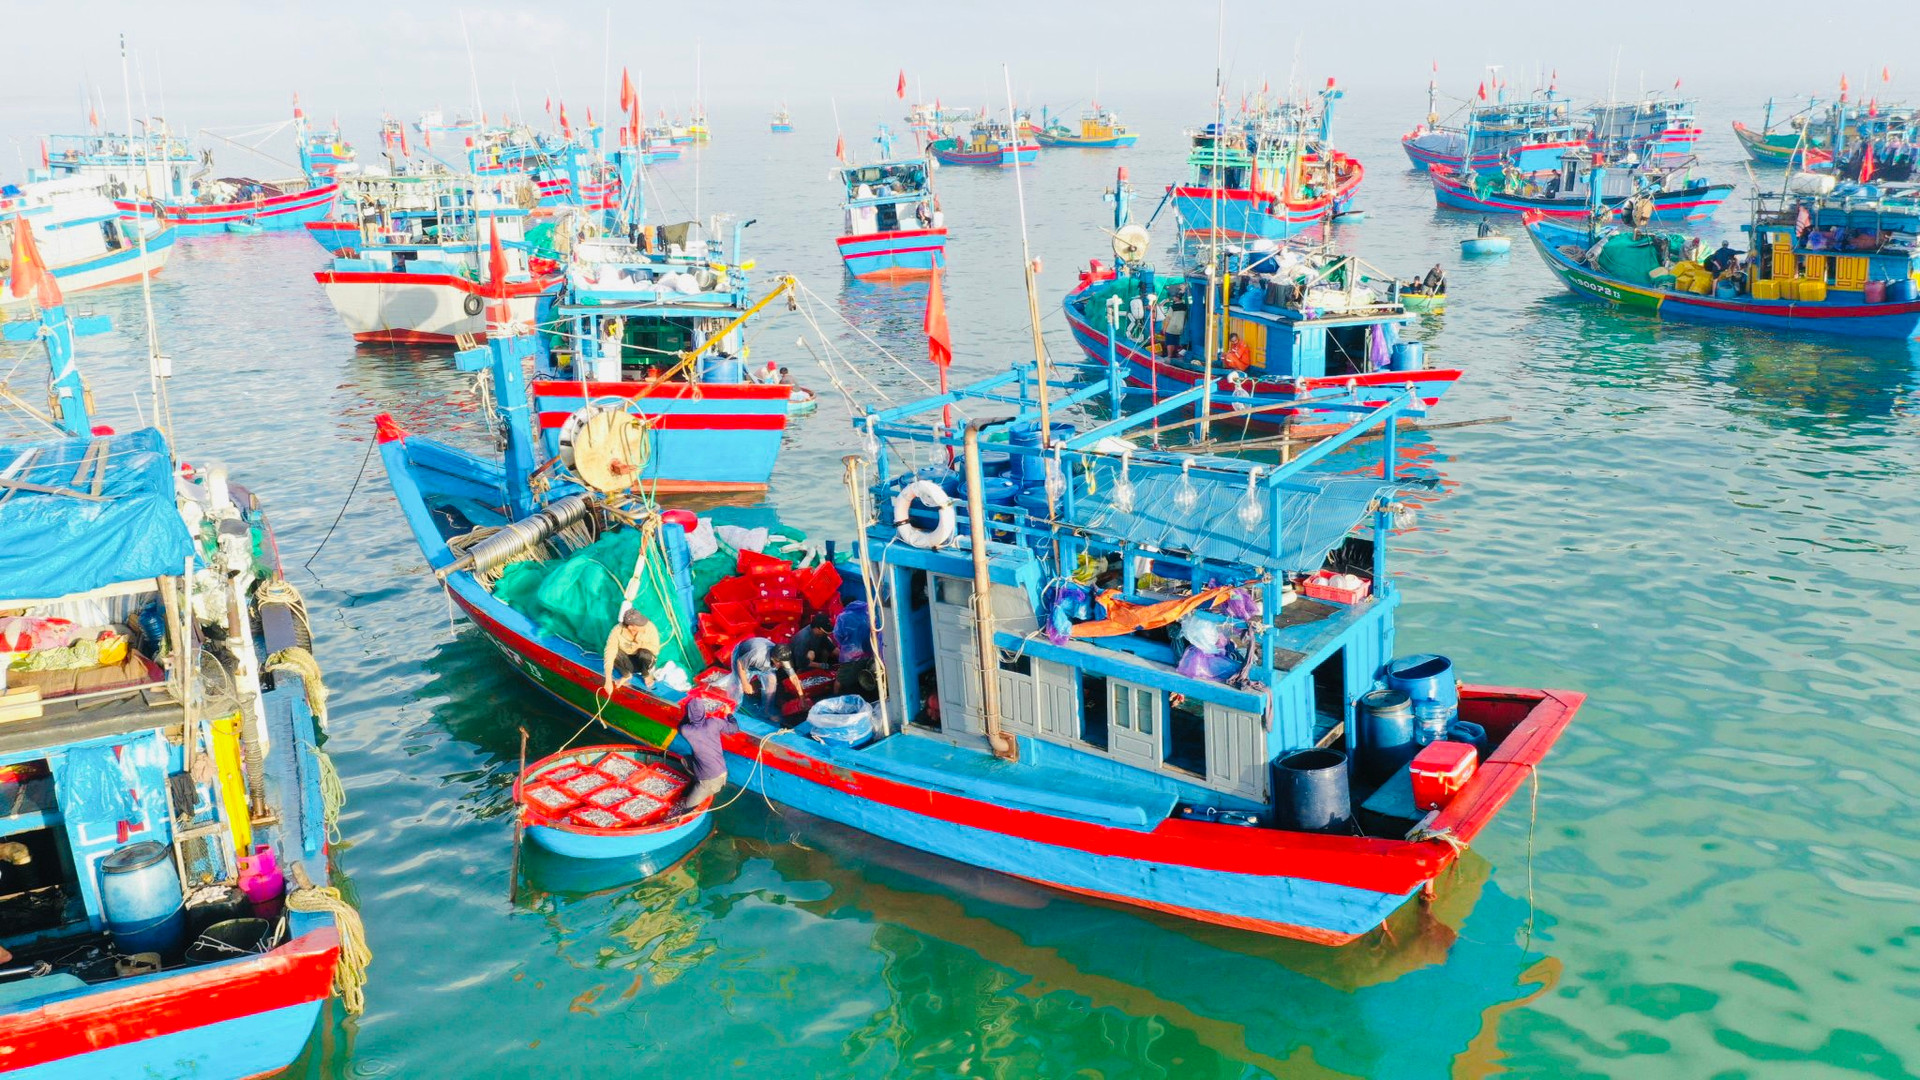 Ở Quảng Ngãi có cái chợ làng biển, hễ mặt trời ló rạng là tấp nập mua bán, cá cơm chất tươi đầy thuyền thúng- Ảnh 2.